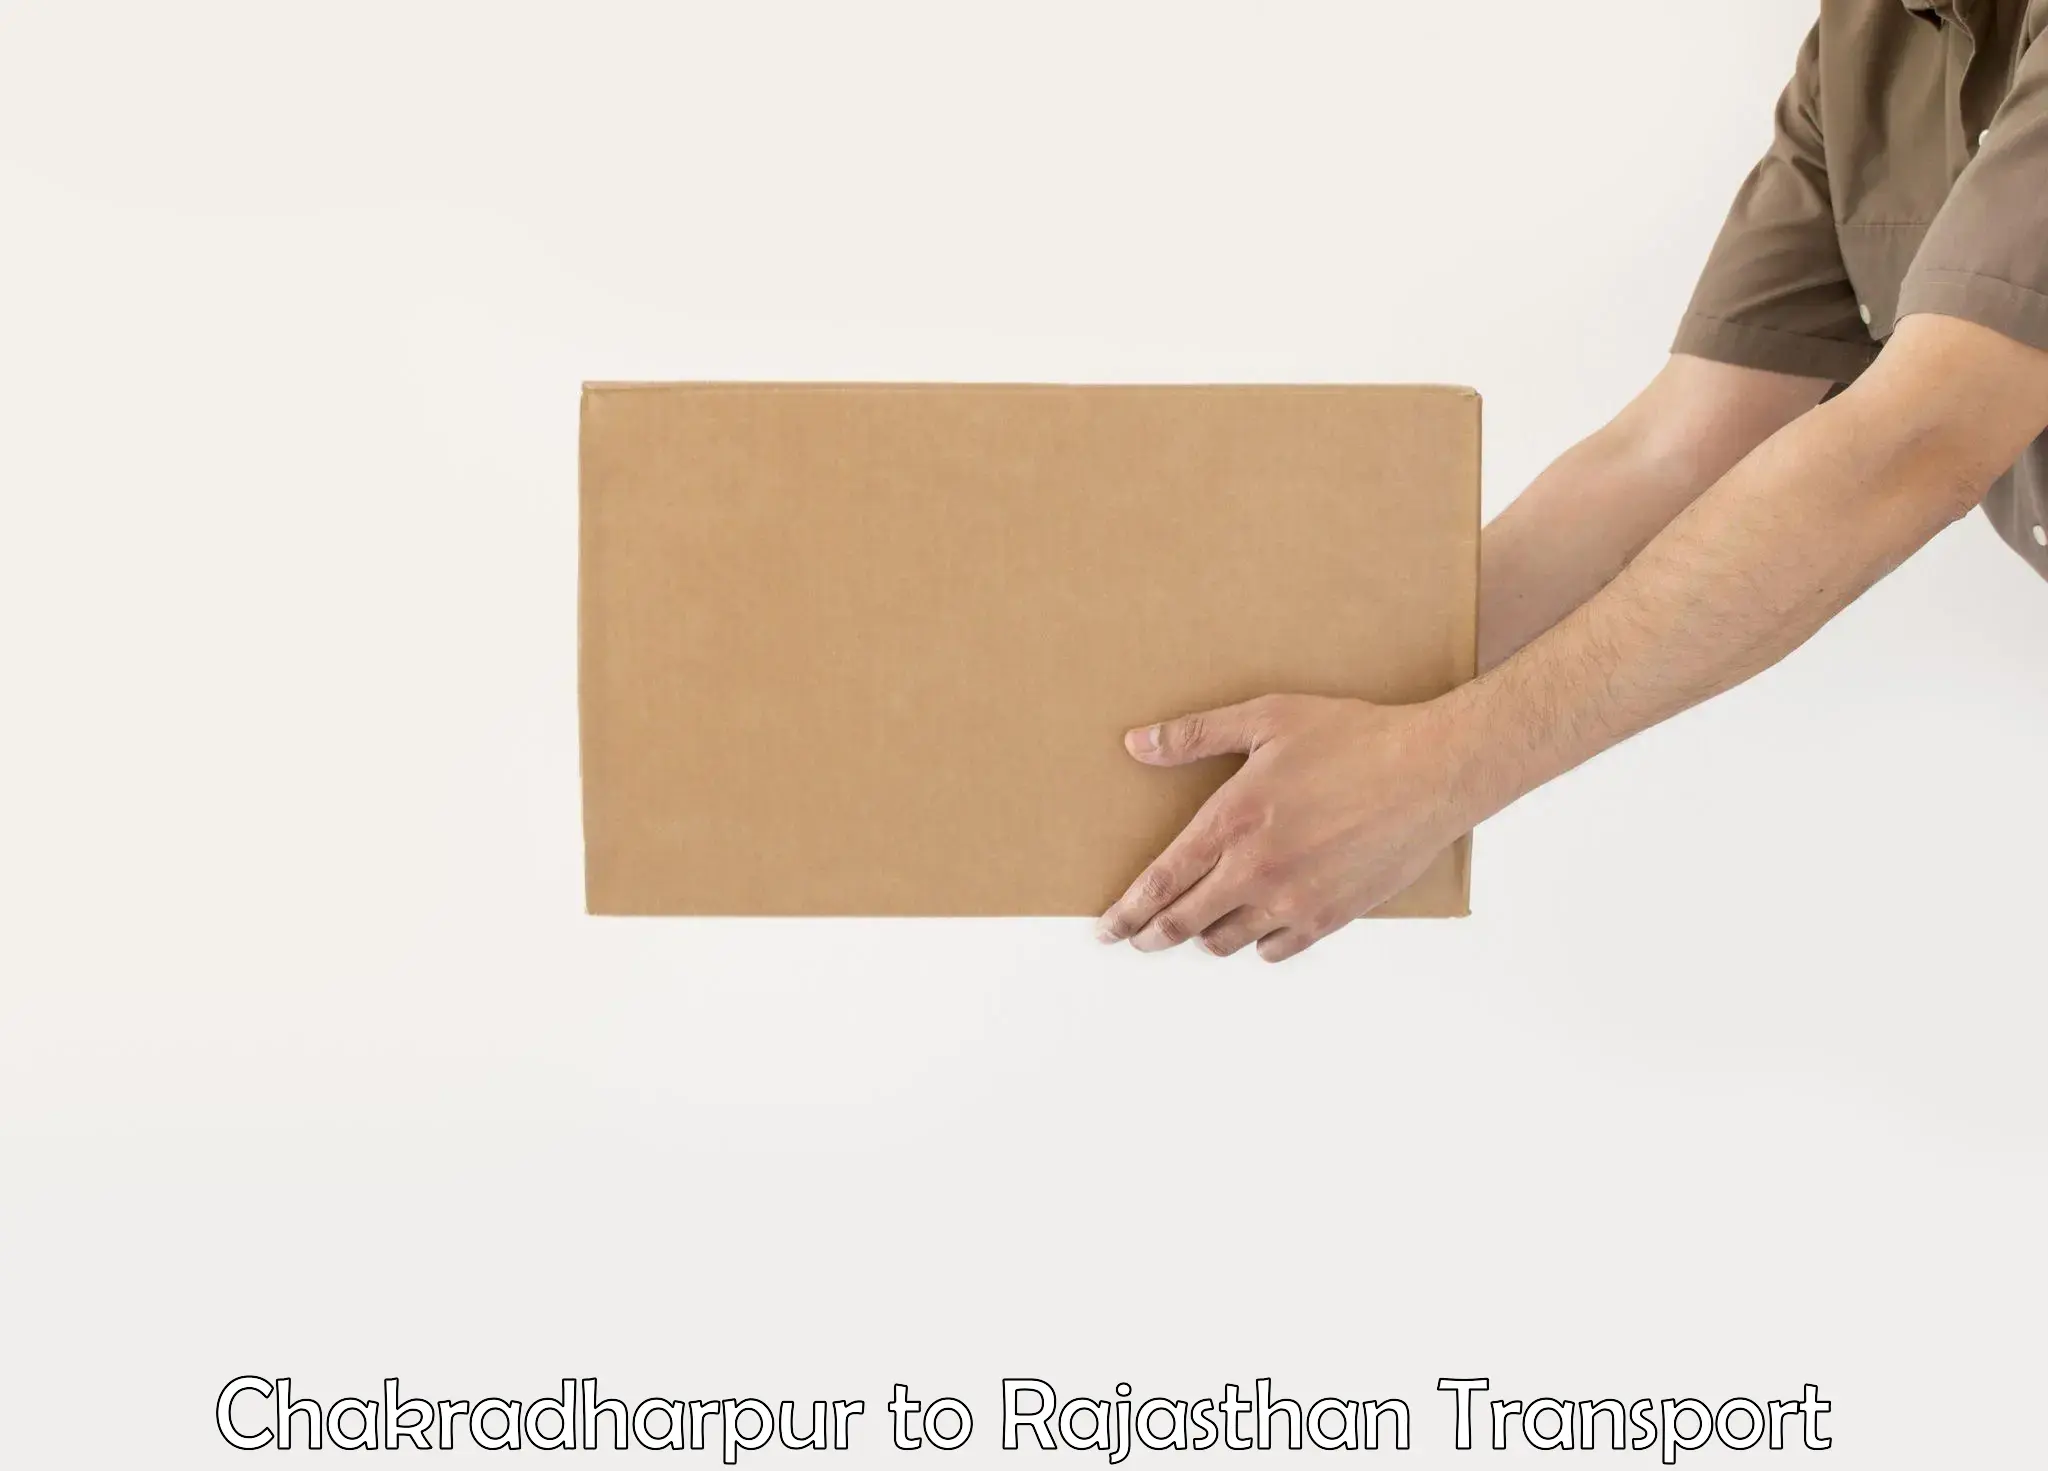 Furniture transport service Chakradharpur to Rajasthan